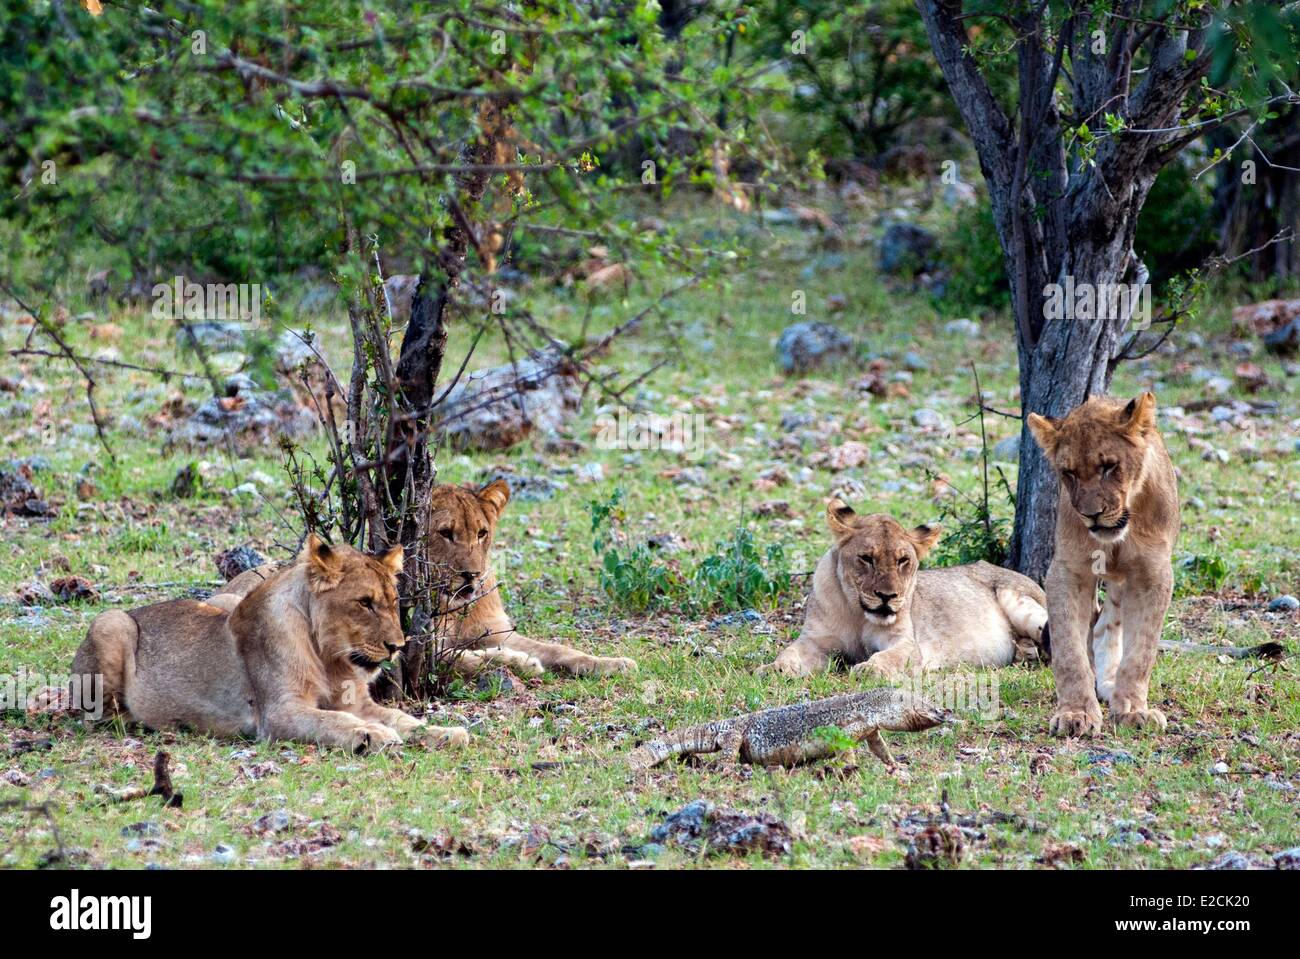 Namibia, Young Lions (Panthera leo) and Rock monitor lizard (Varanus albigularis) Stock Photo